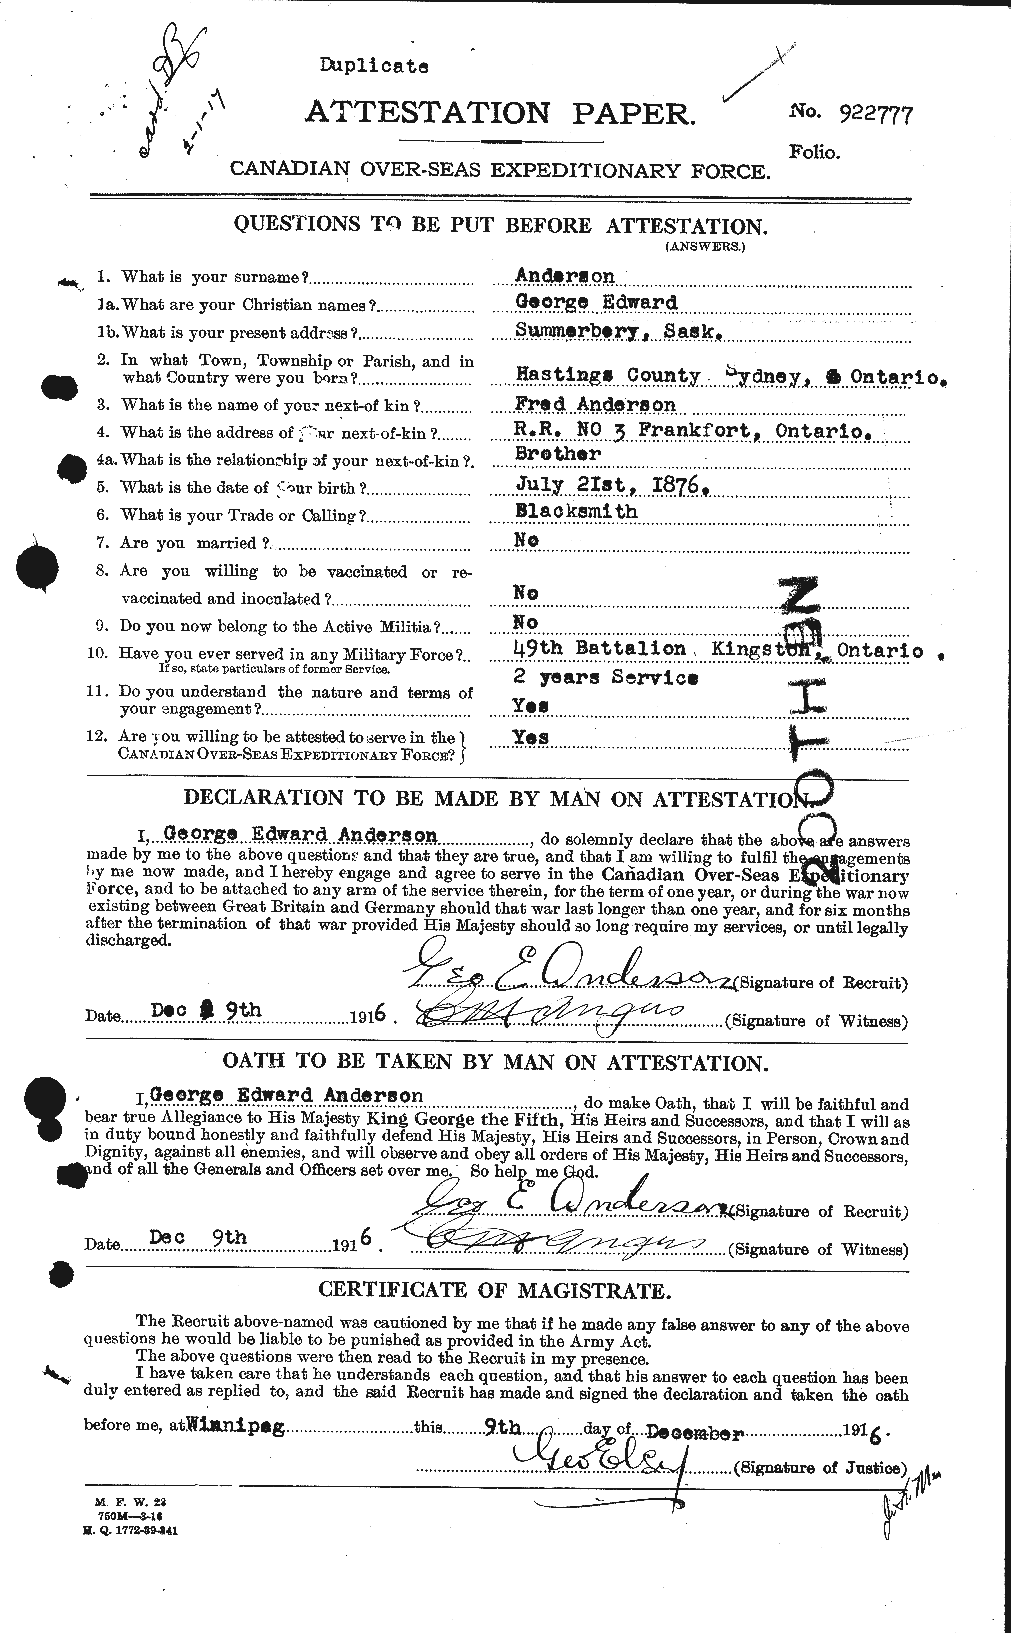 Dossiers du Personnel de la Première Guerre mondiale - CEC 209729a